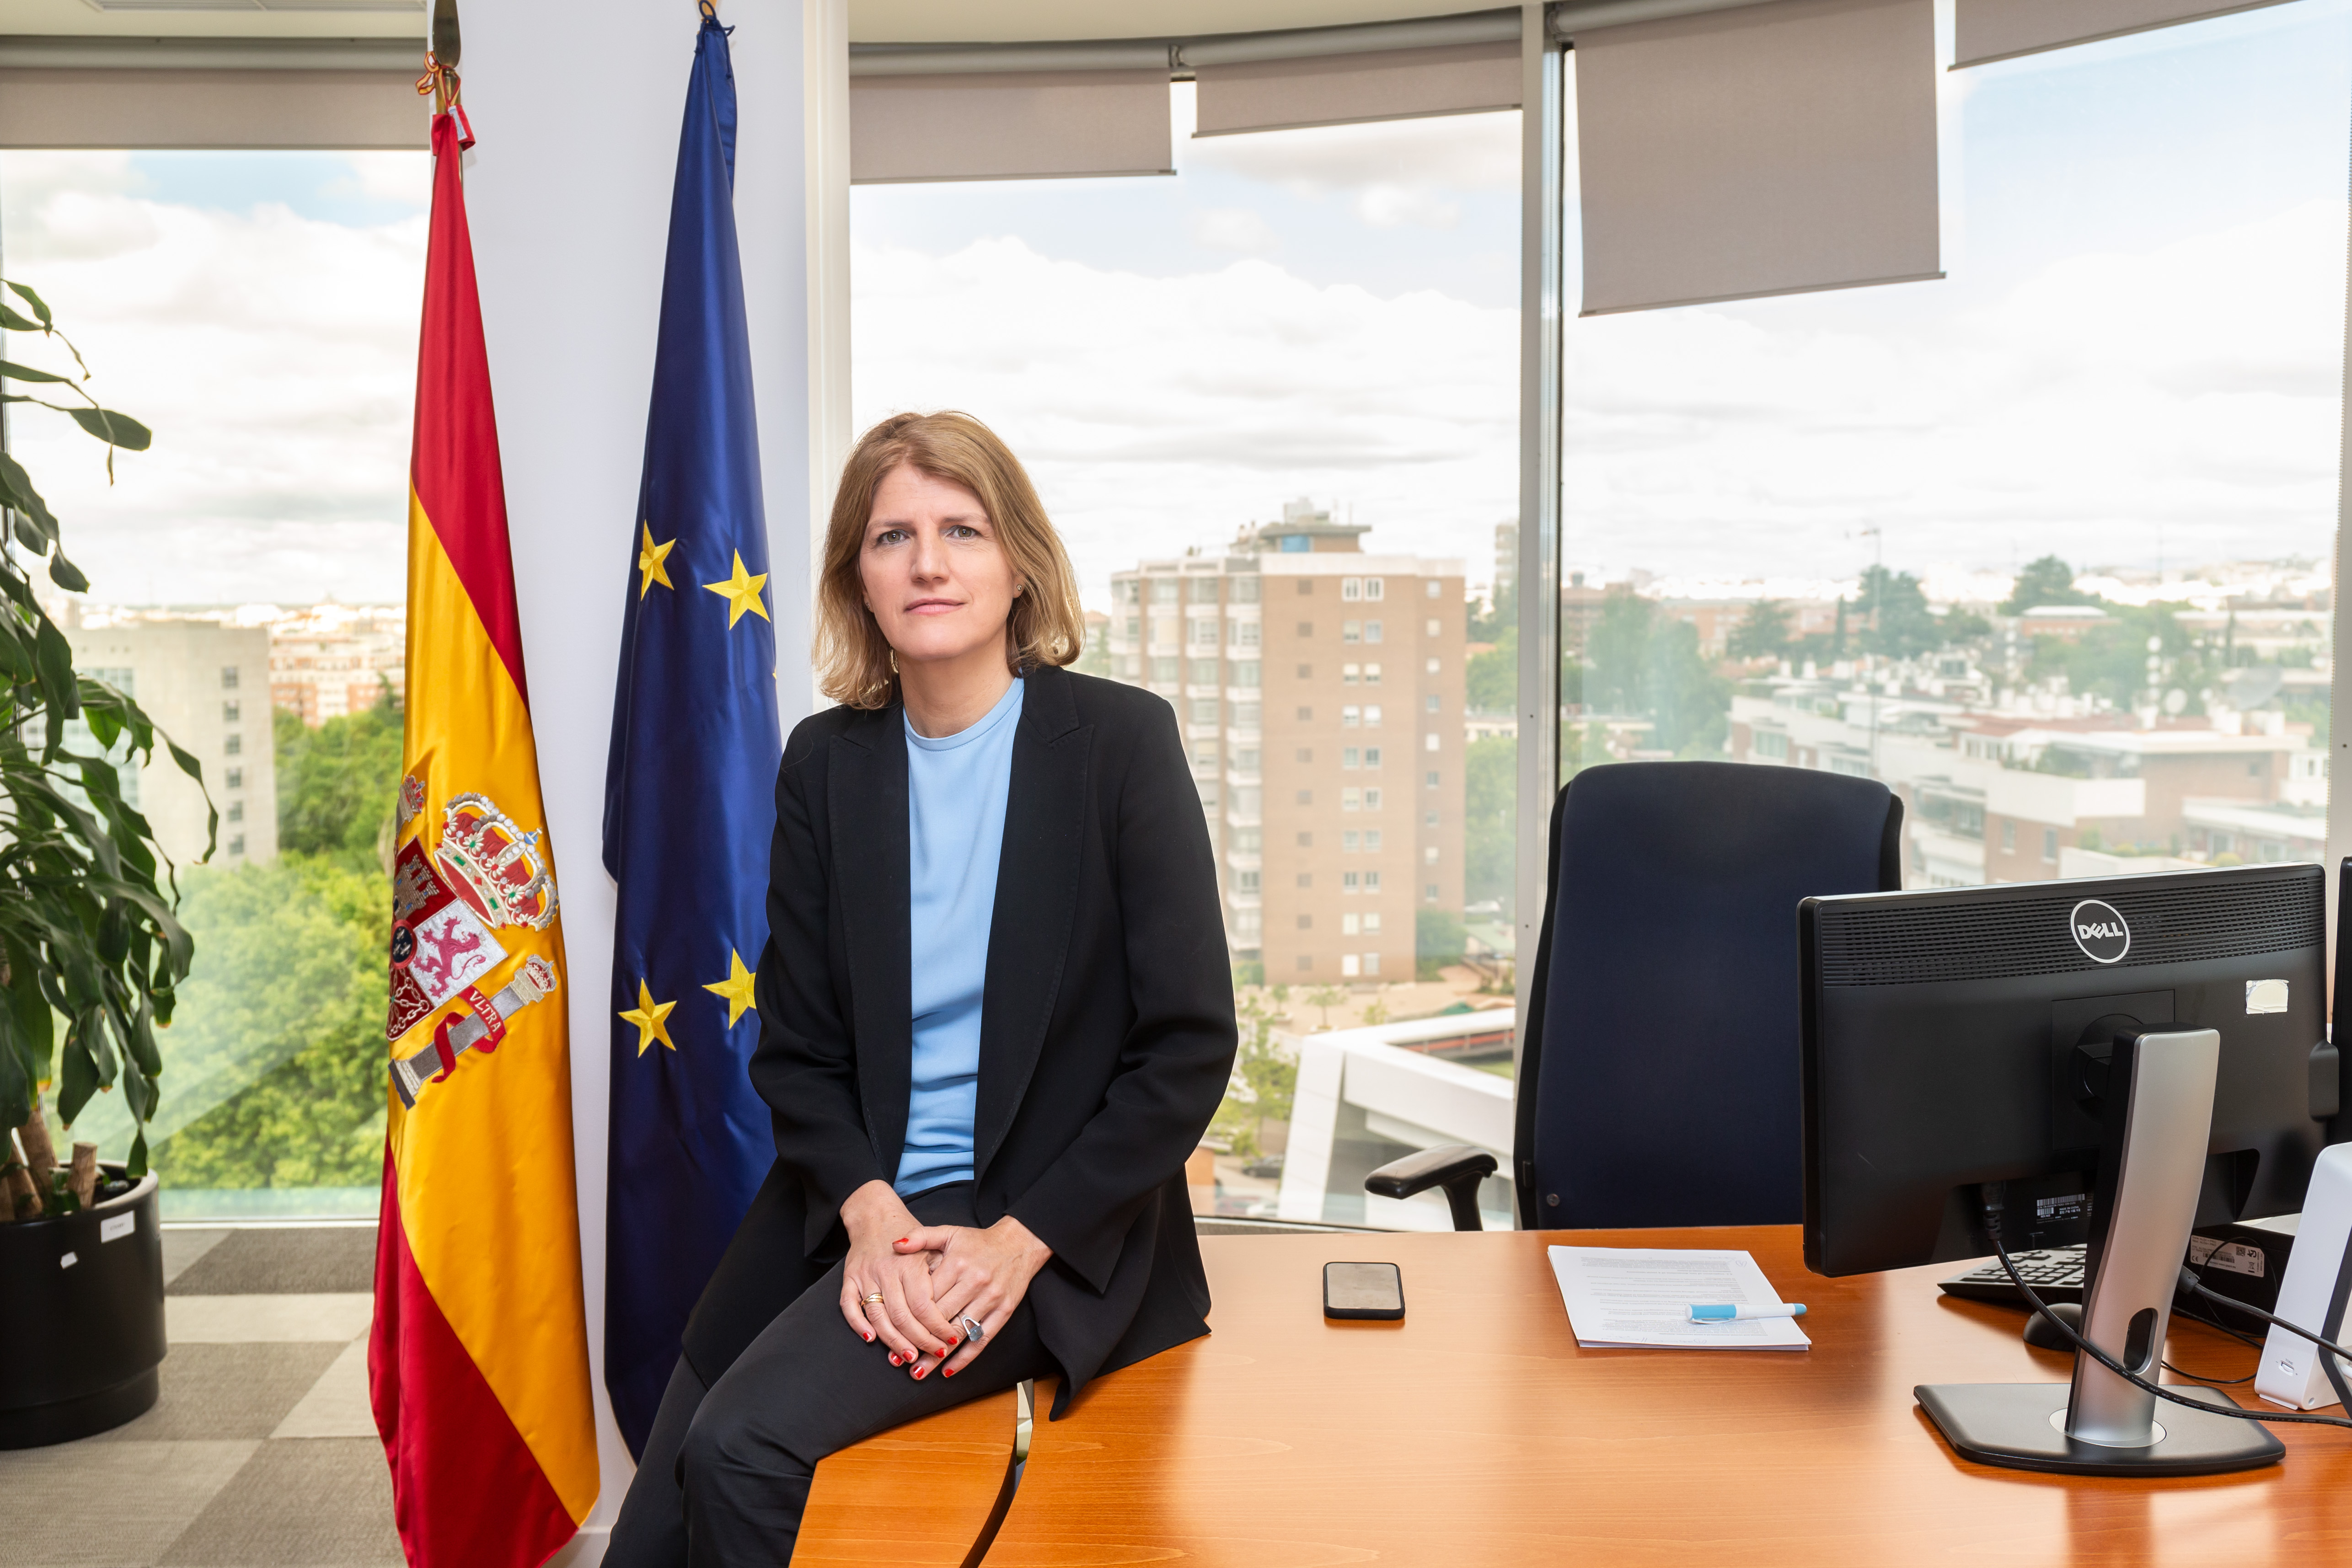 Image of Helena Viñes, consejera de la CNMV, sentada en su despacho (new window will open)